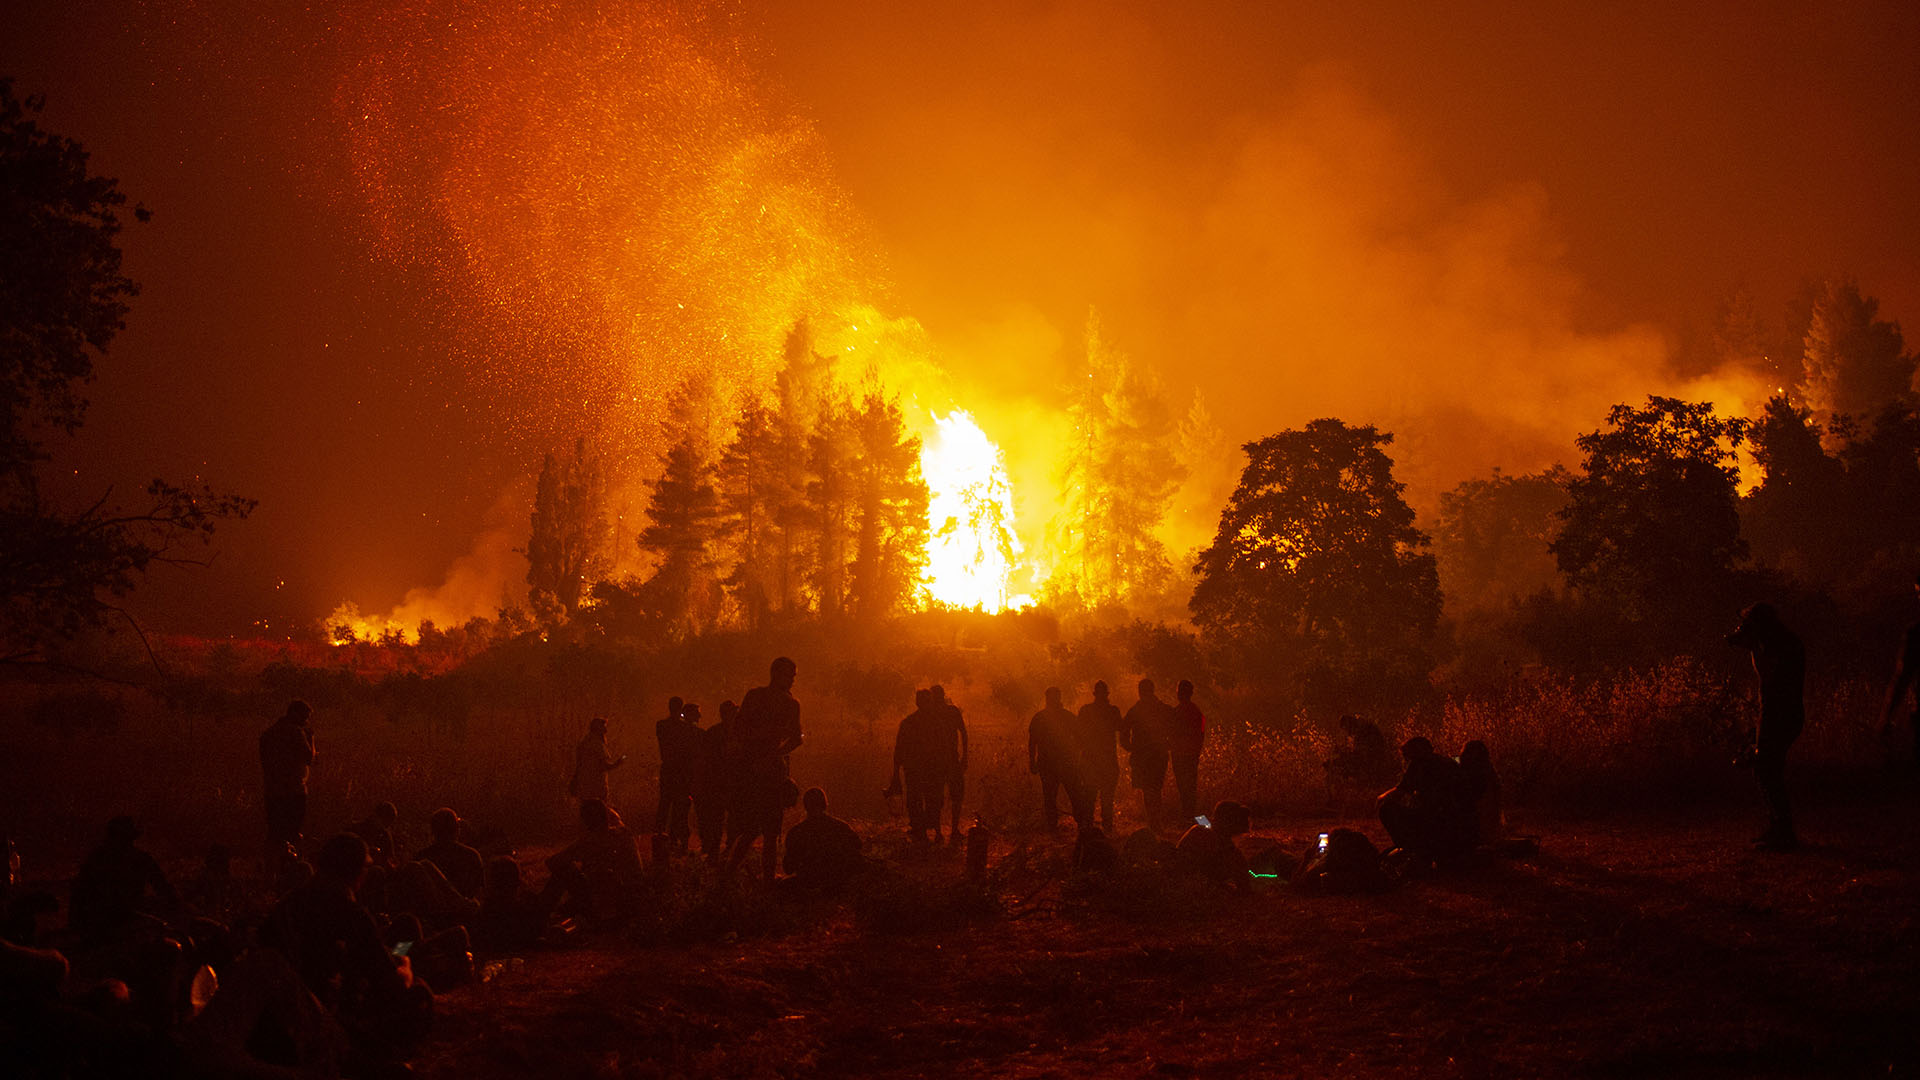 Los expertos relacionan estas canículas e incendios al cambio climático que, según ellos, multiplicará e intensificará estos fenómenos (Foto: AFP)